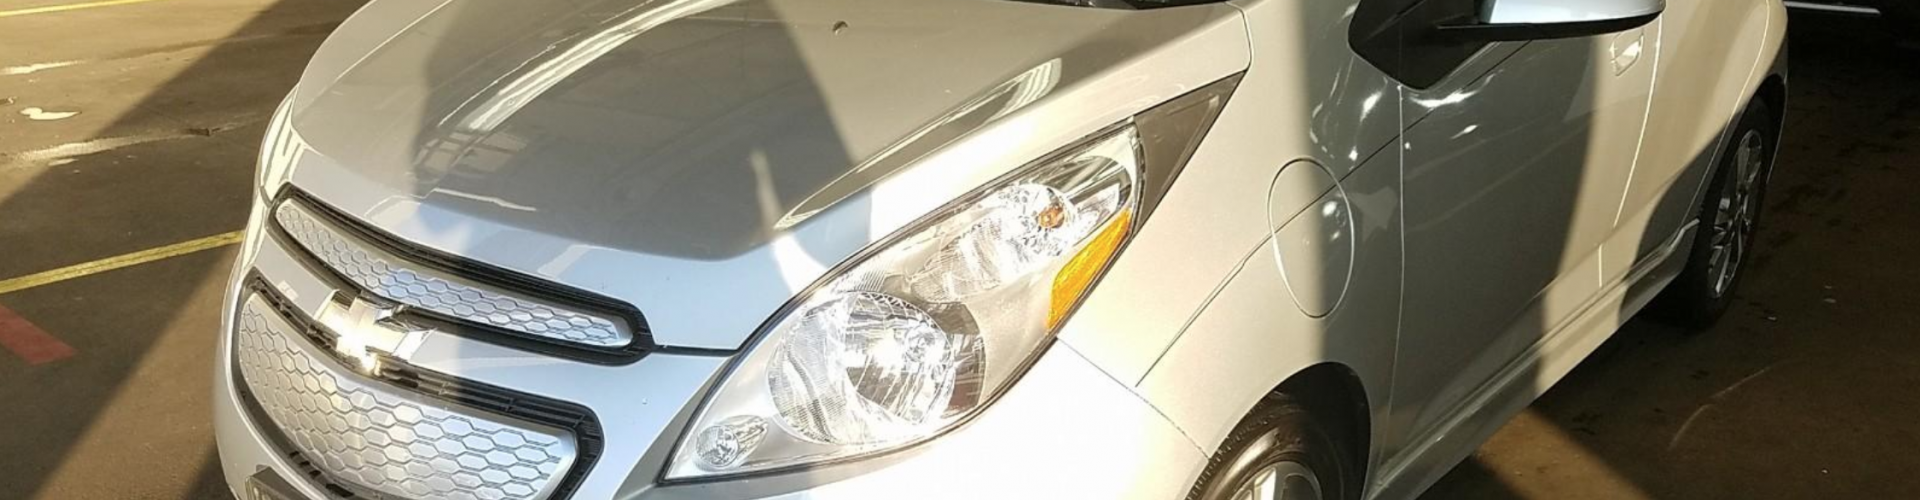 CHEVY SPARK EV LT 2015 – 52 037  Km – Charge rapide 400V – Seulement 14 171 $ avec la subvention – VENDU